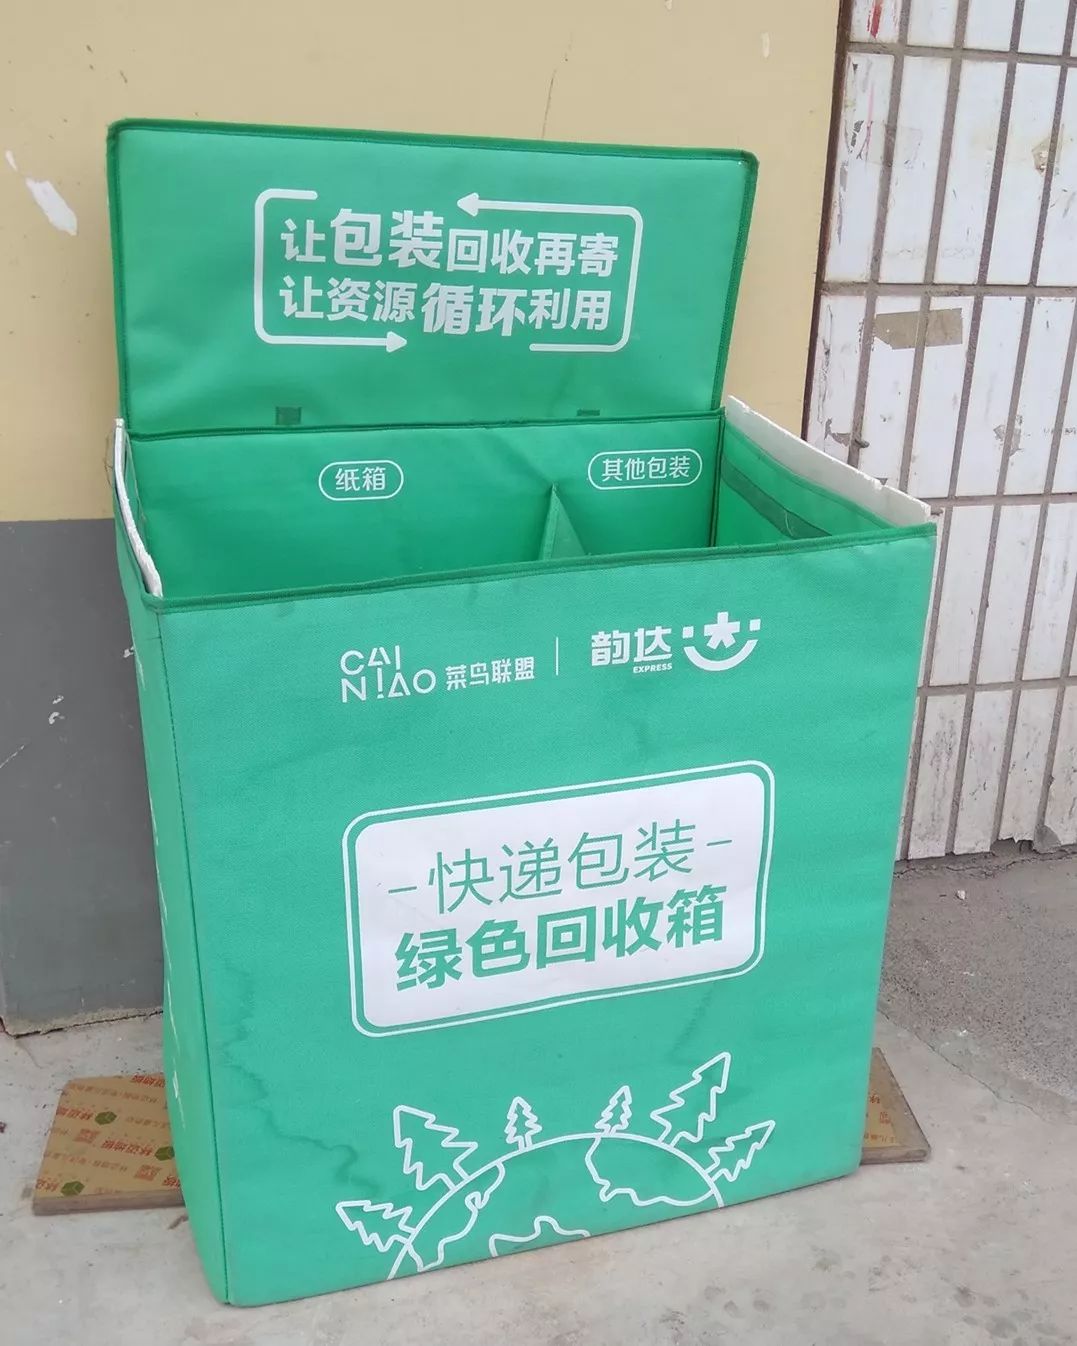 微环保大智慧丨让快递包装绿起来绿色回收箱已成快递网点标配